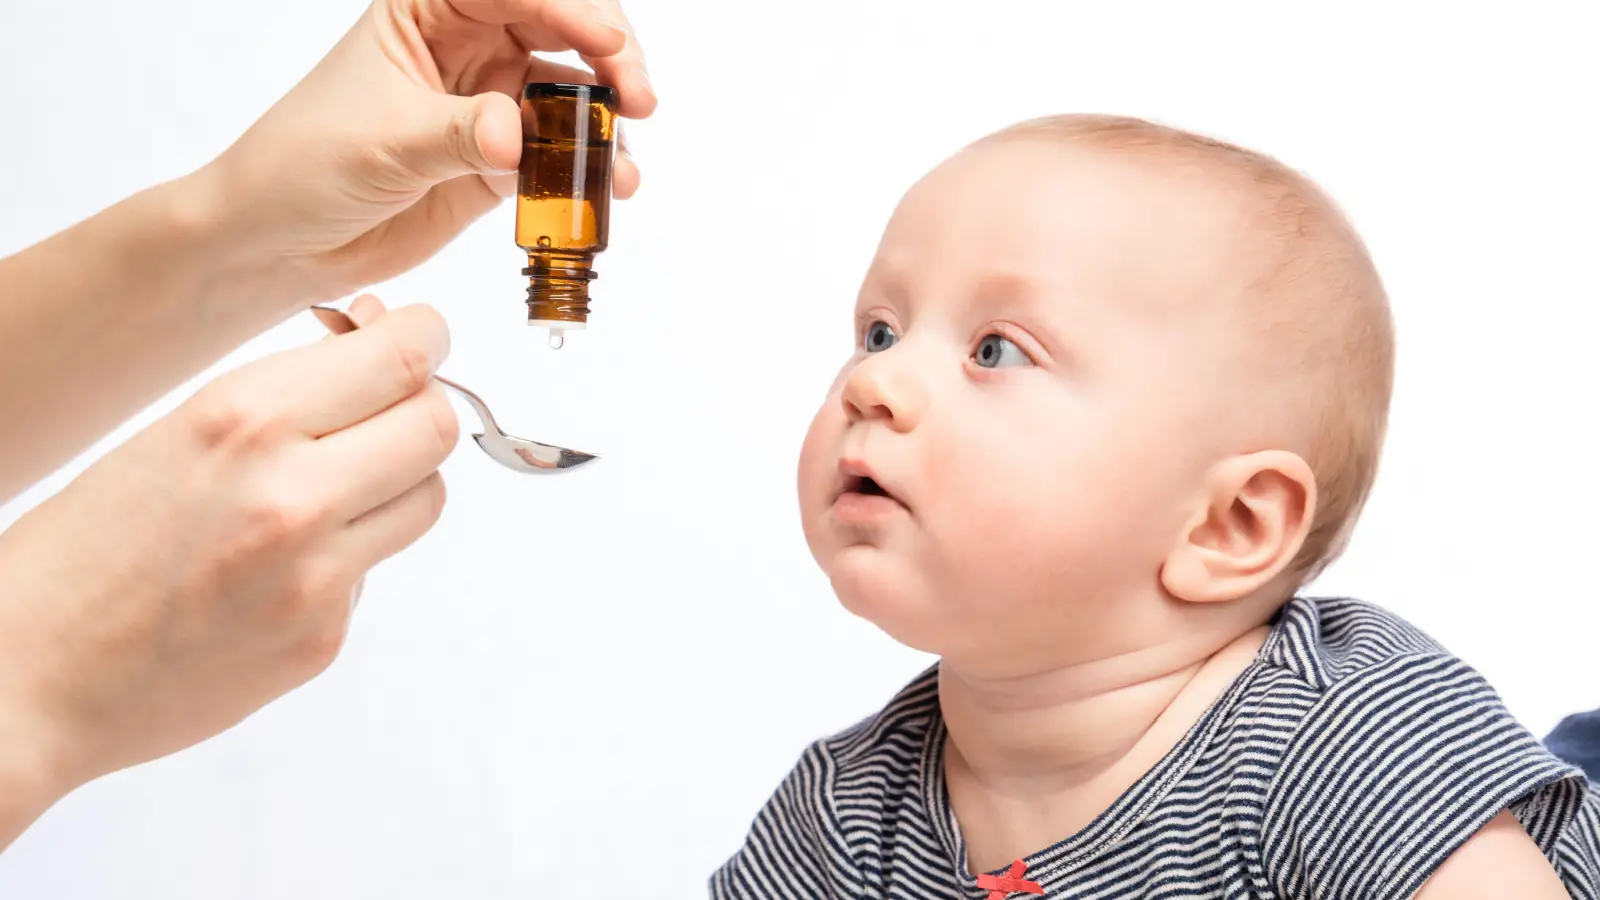 ما هي أسباب نقص فيتامين د عند الأطفال؟ وما هي أعراضه؟